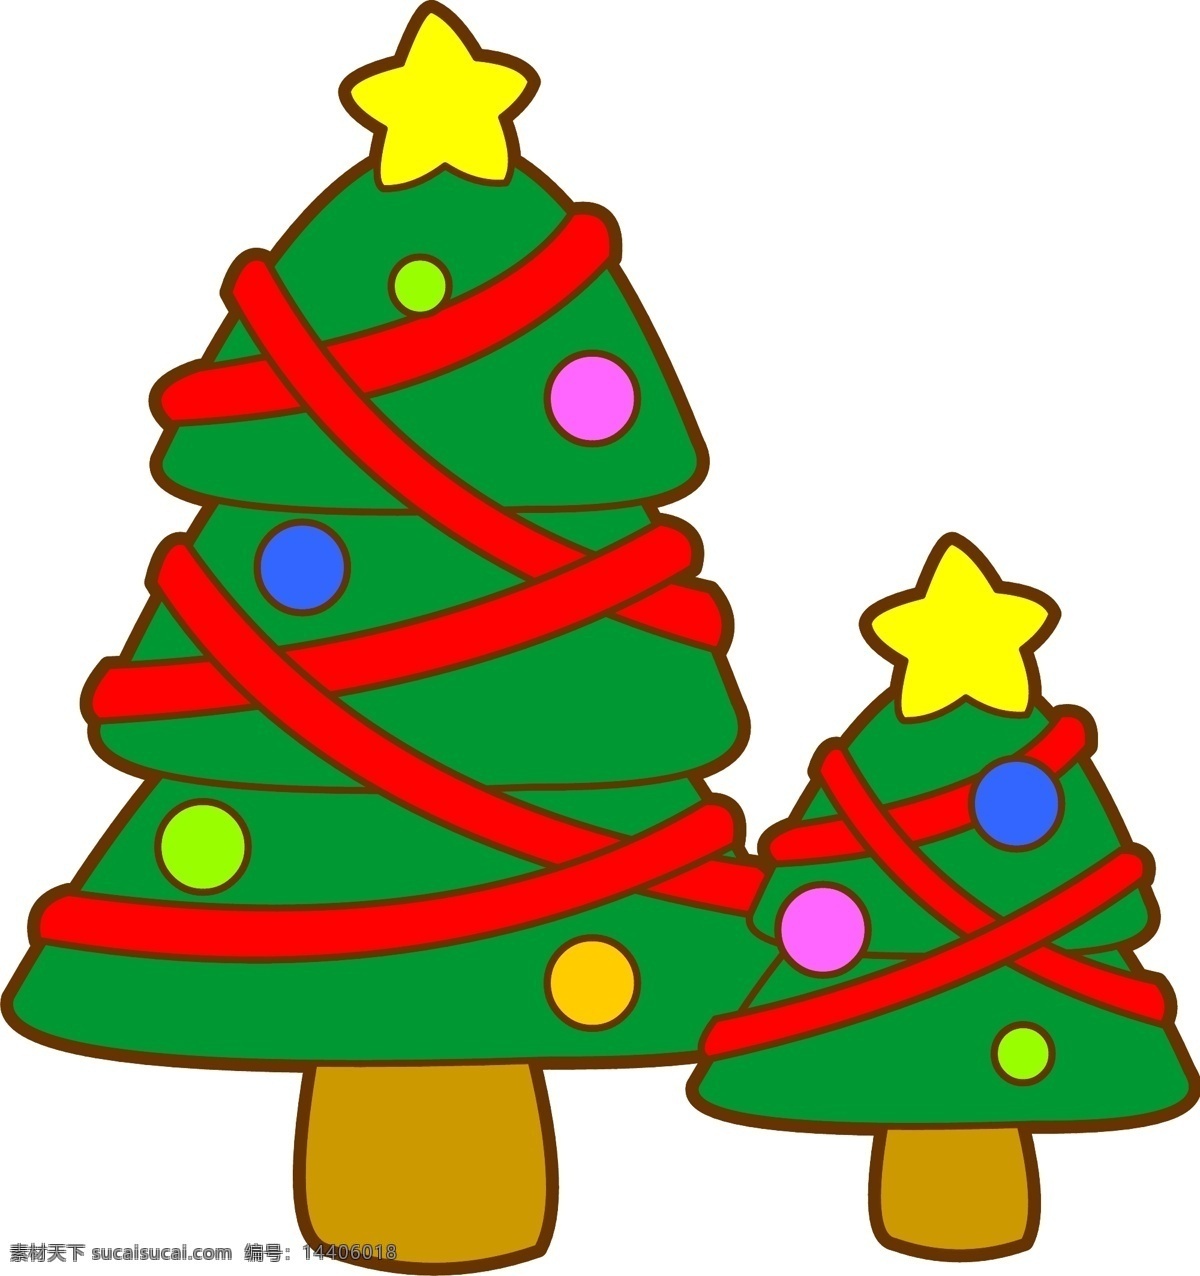 圣诞节 q版圣诞树 圣诞树 圣诞树装饰 圣诞 圣诞节装饰 常青树 洋松 节日 彩灯 圣诞彩灯 卡通圣诞树 星星 圣诞礼物